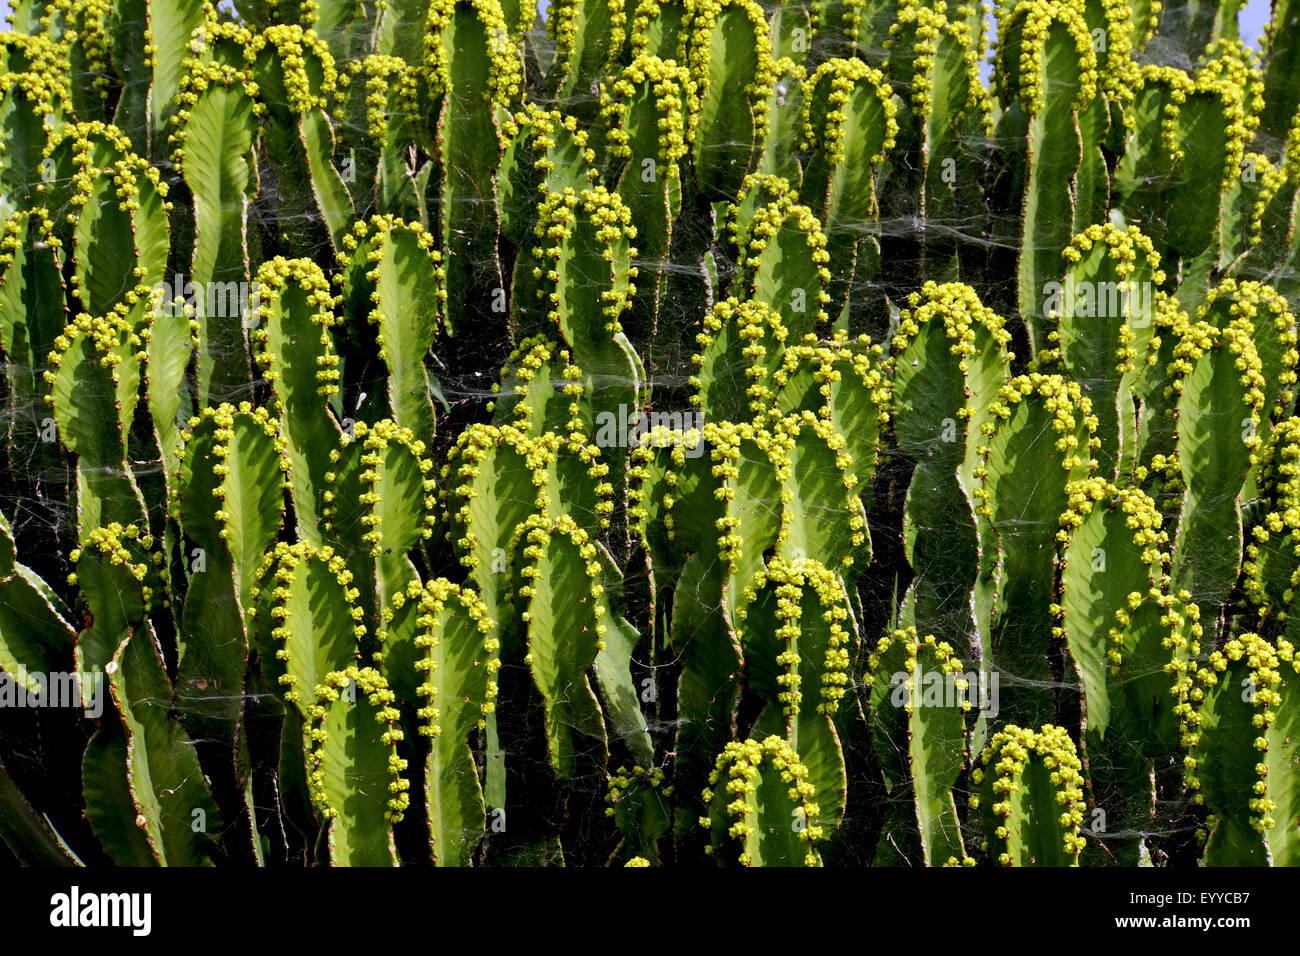 Islas Canarias expurgo (Euphorbia canariensis), grupo, Islas Canarias, Tenerife Foto de stock